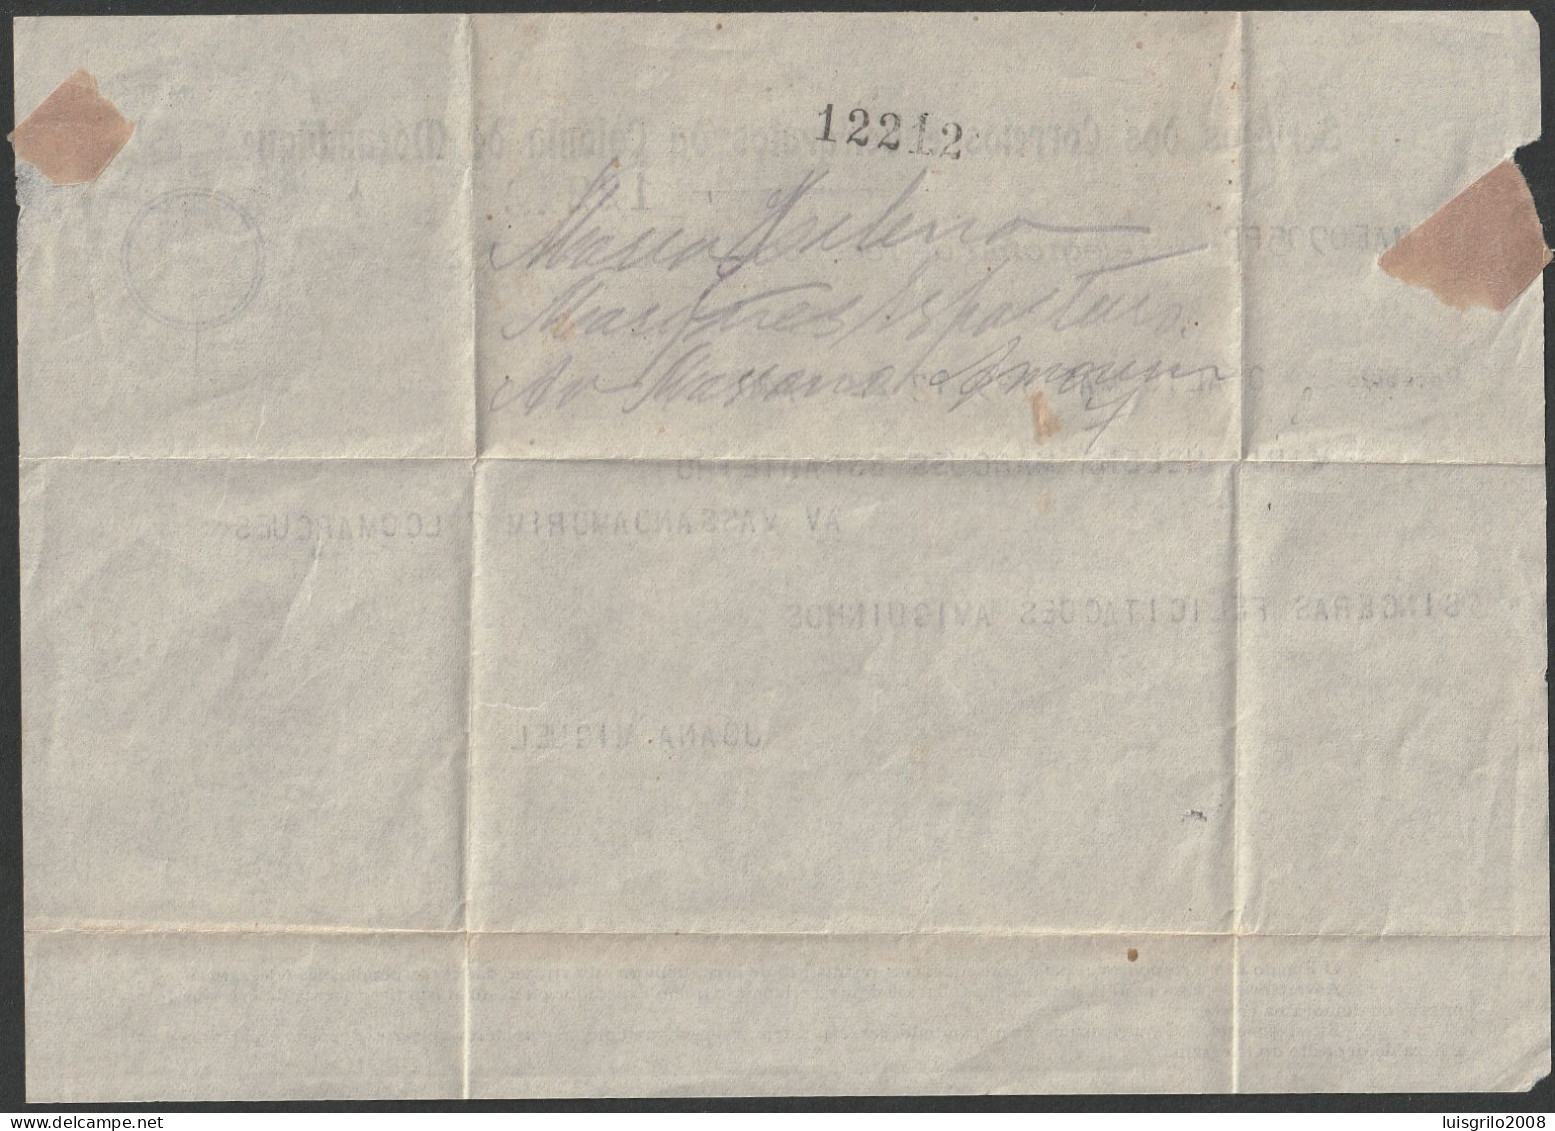 Telegram/ Telegrama De Recepção - Colónia De Moçambique > Lourenço Marques -|- Postmark - Lourenço Marques. 1947 - Lettres & Documents